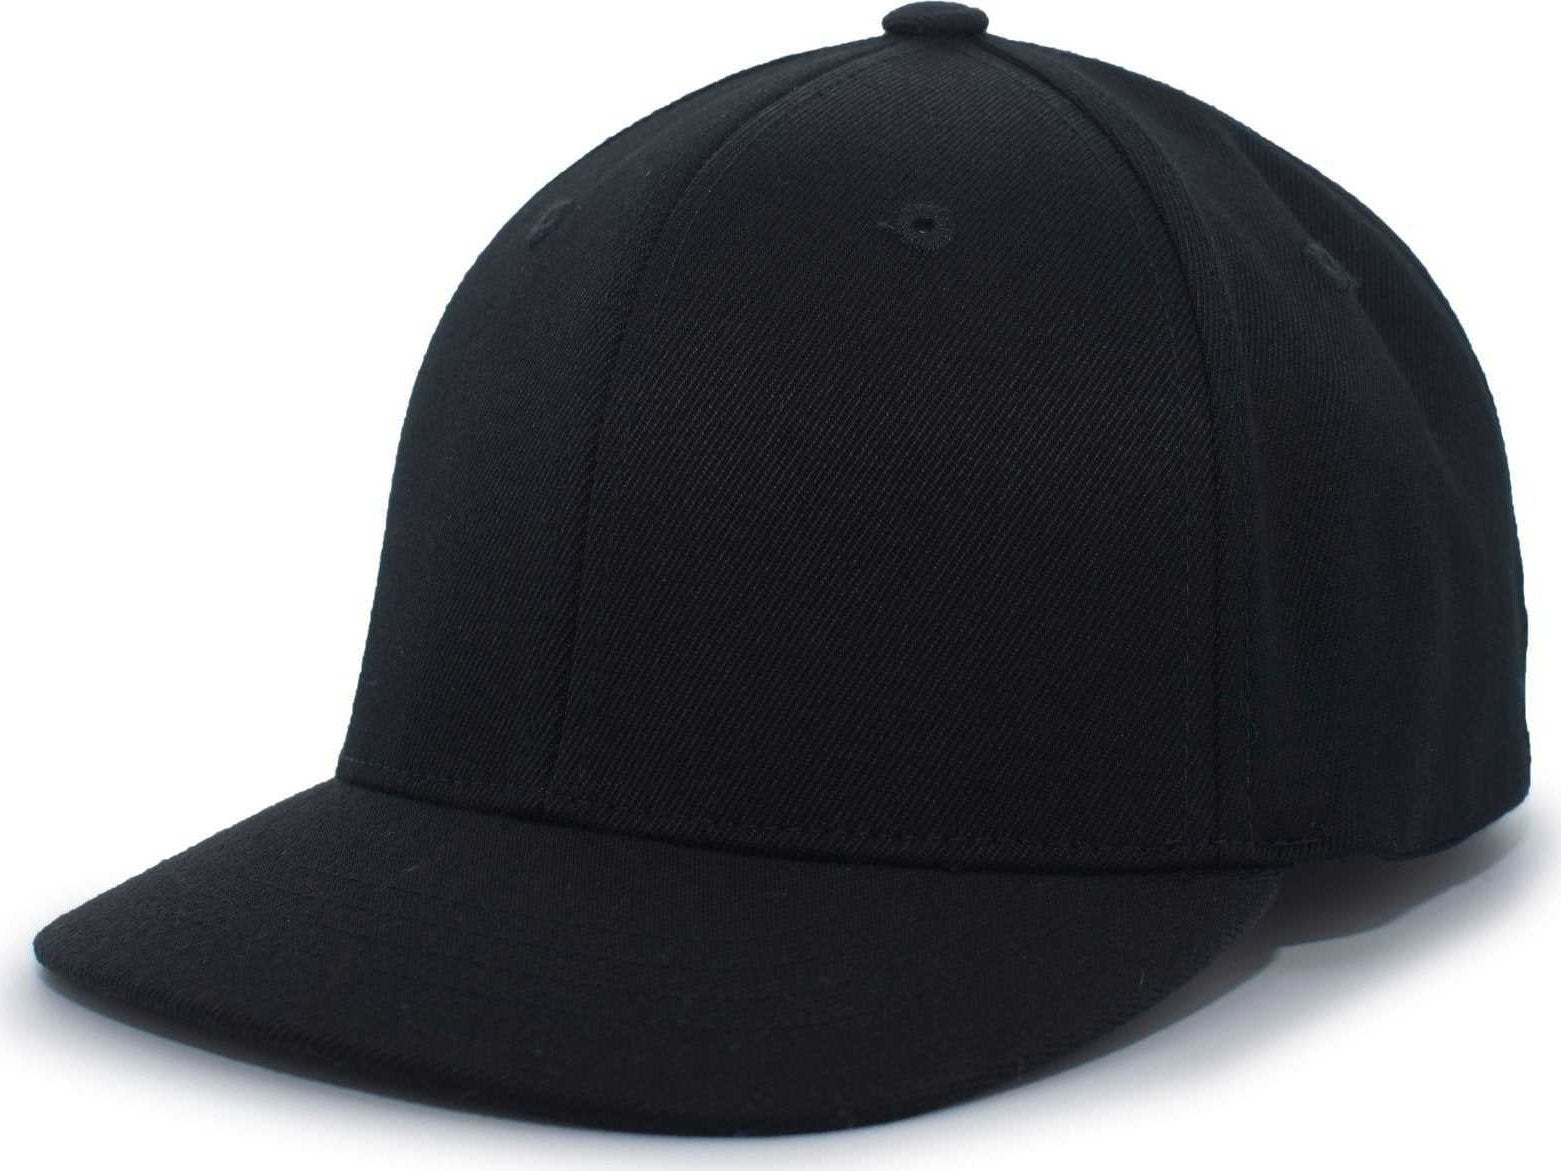 Pacific Headwear 855U Pro-Wool Combo Cap Flexfit Cap - Black - HIT a Double